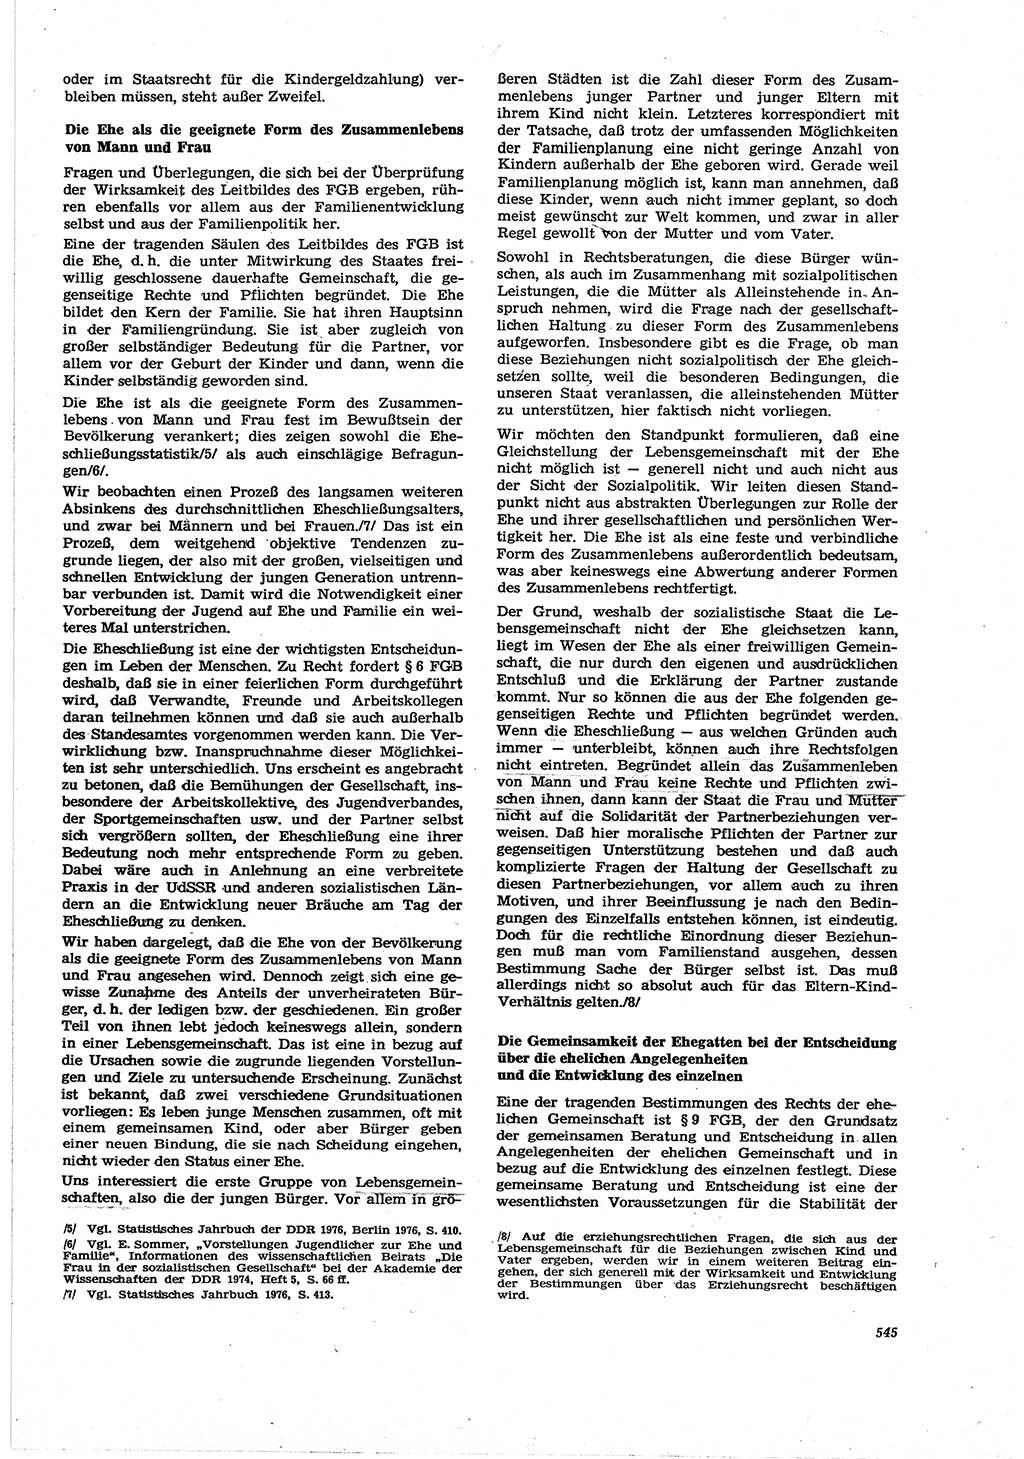 Neue Justiz (NJ), Zeitschrift für Recht und Rechtswissenschaft [Deutsche Demokratische Republik (DDR)], 30. Jahrgang 1976, Seite 545 (NJ DDR 1976, S. 545)